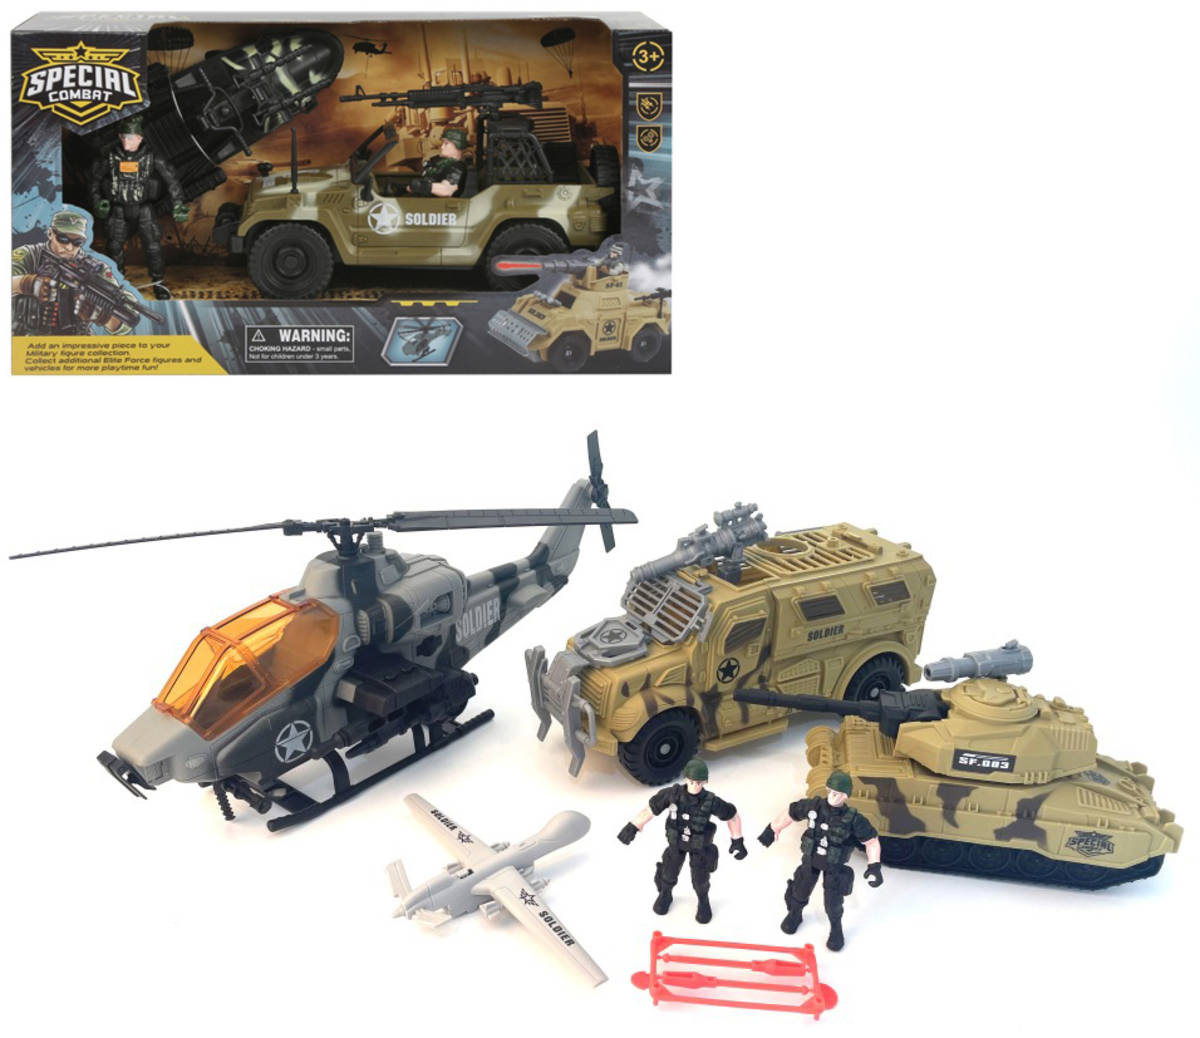 Vojenská army sada figurky s vojenskými vozidly a doplňky 3 druhy plast